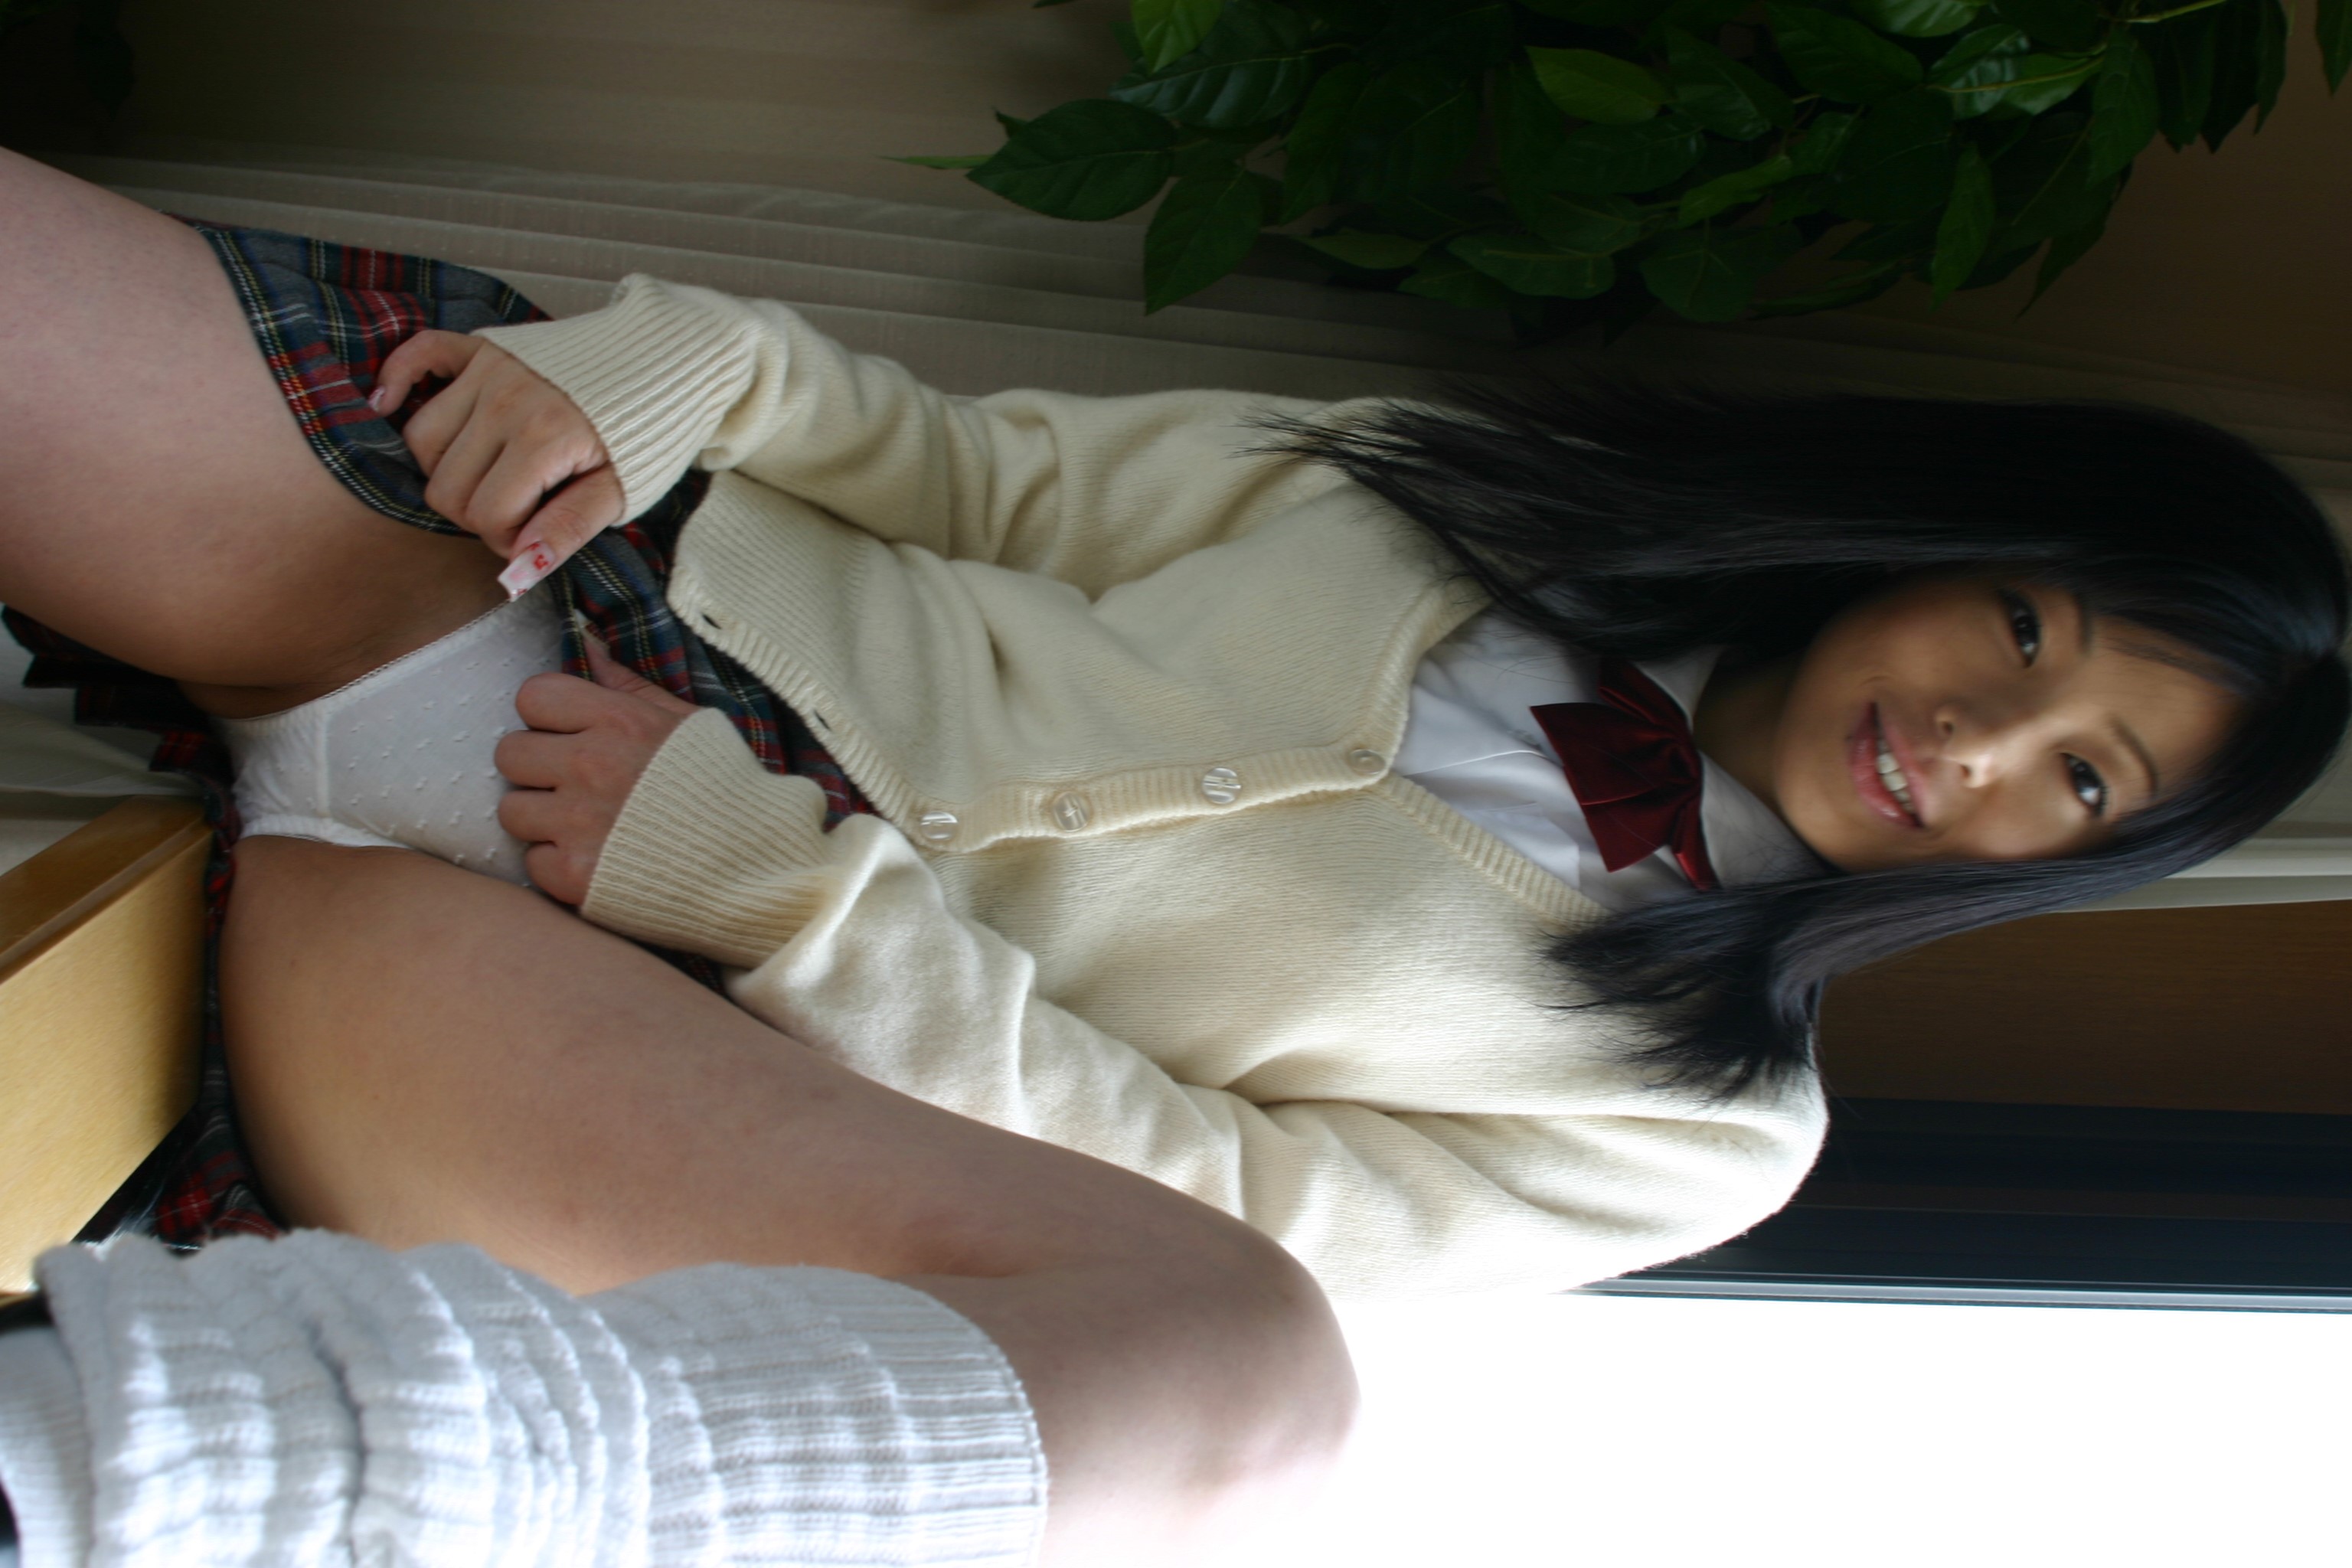 Asian schoolgirl looks for some online exposure